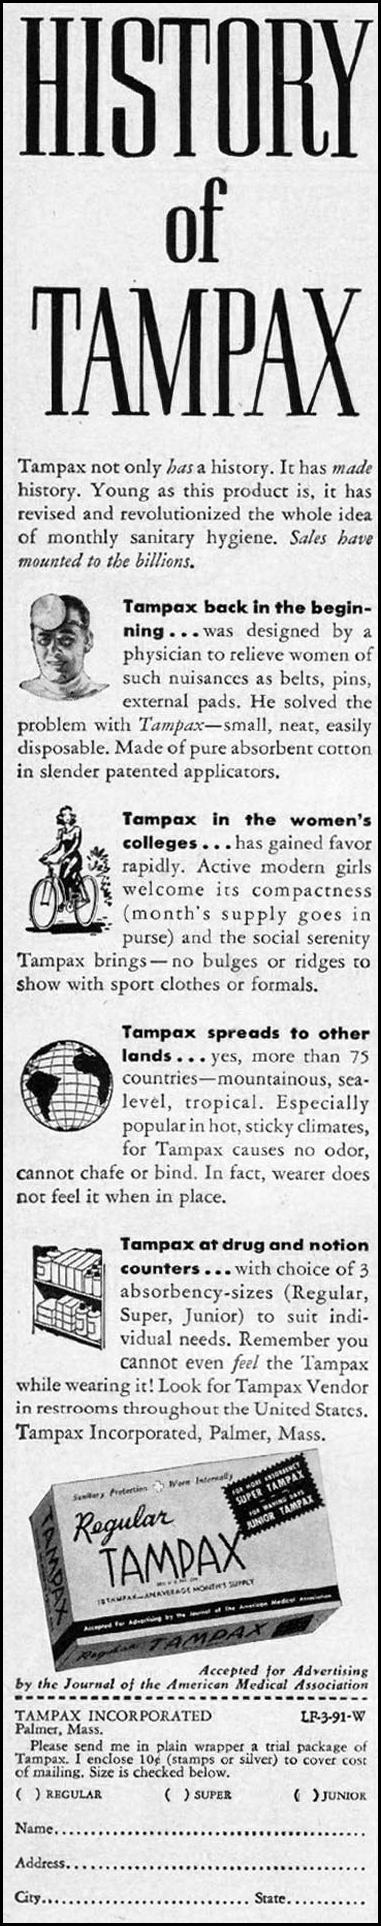 TAMPAX
LIFE
09/03/1951
p. 38